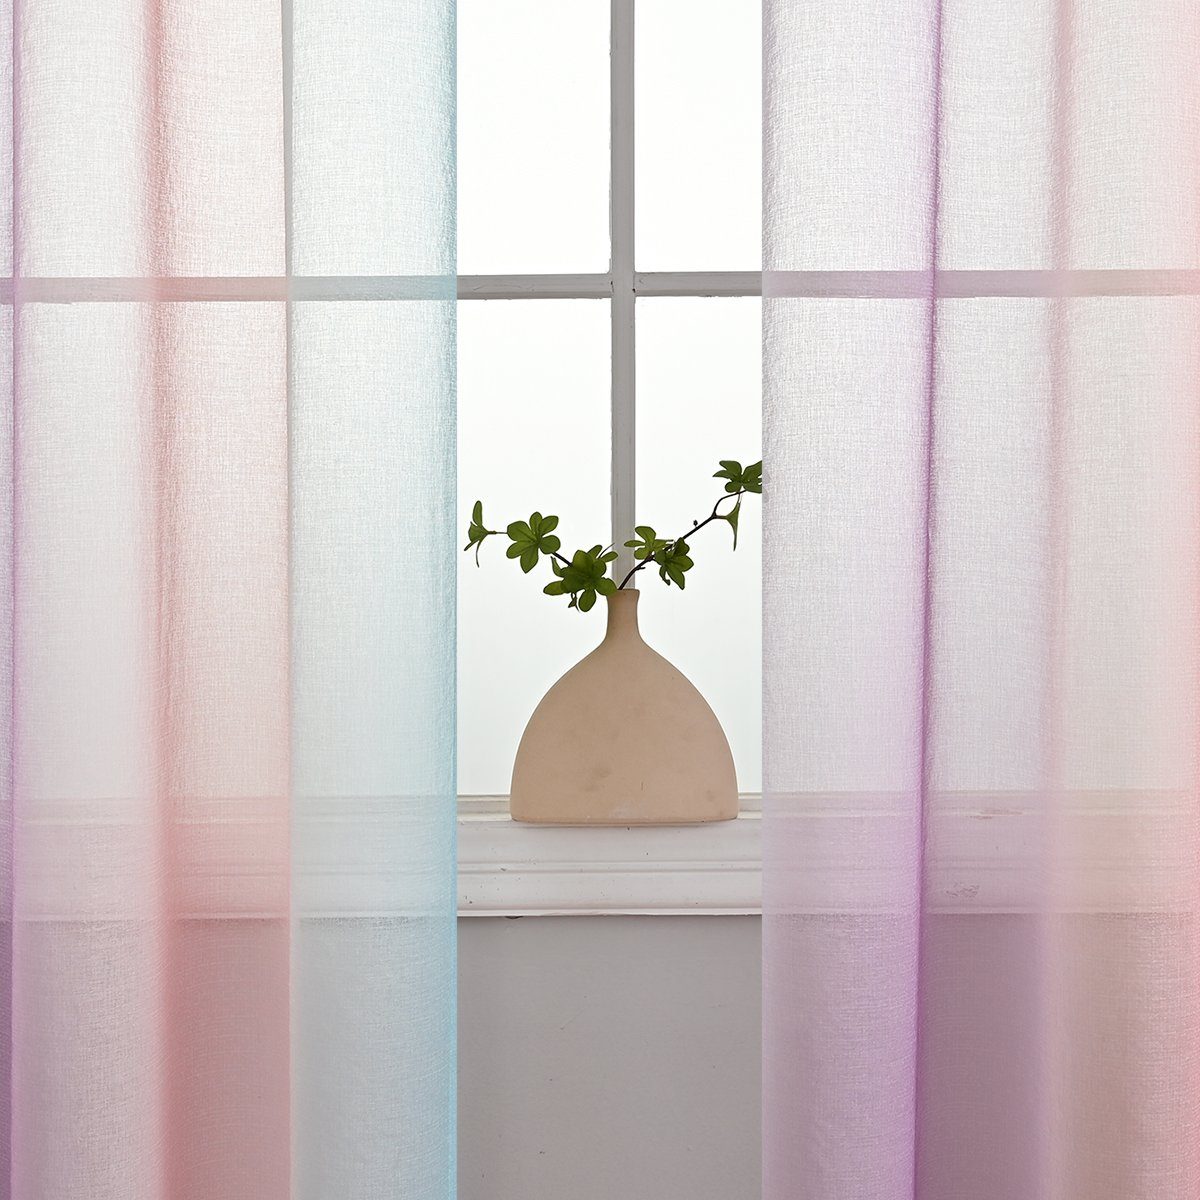 HOMEIDEAS, transparent, Bunt Vorhang und (2 Voile Stangendurchzug Gardine, Polyester, St),